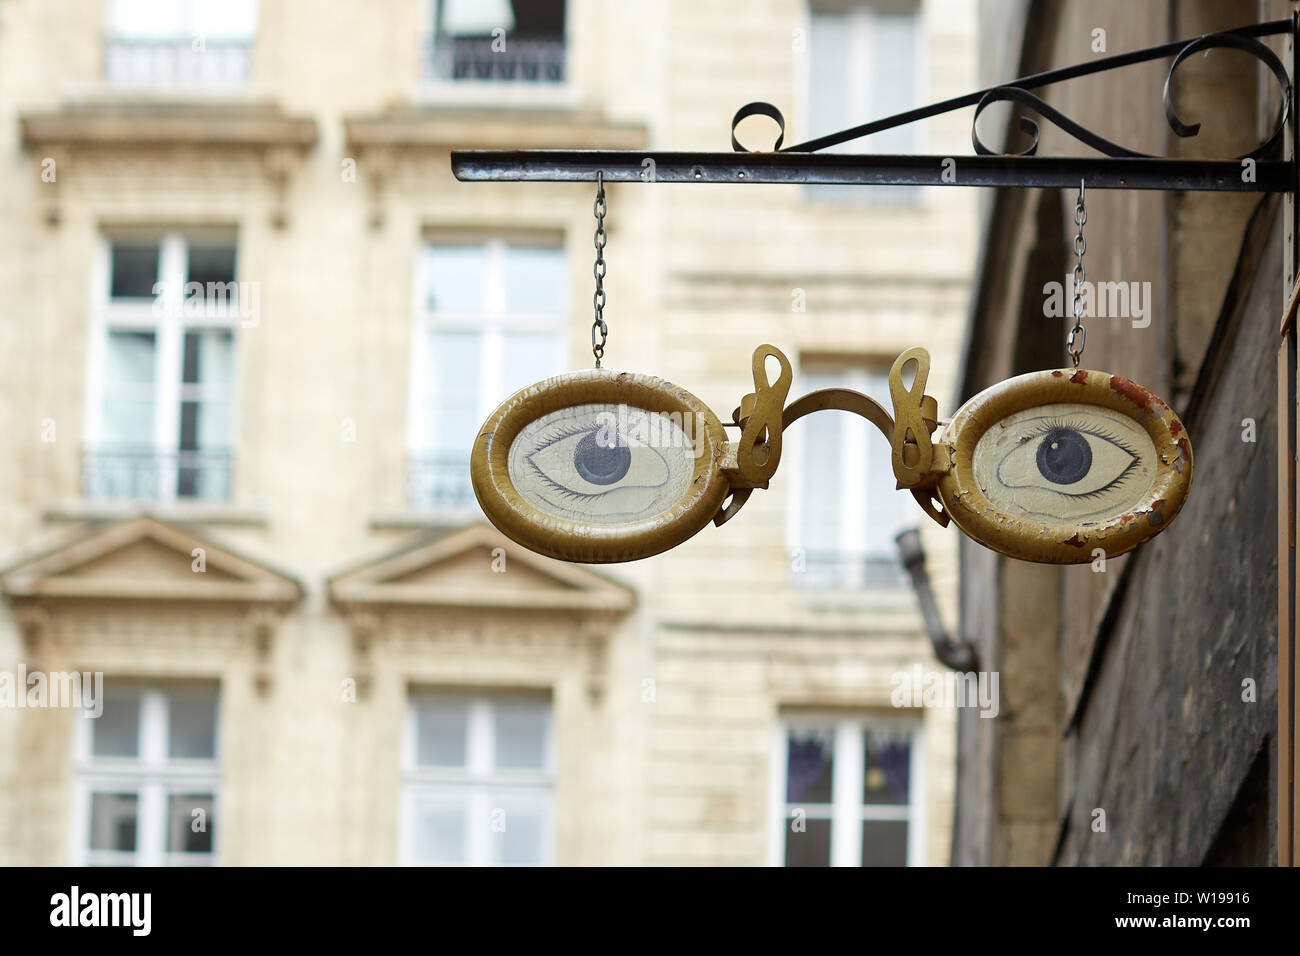 Coppia di oro vetri bordati con gli occhi blu - creative shop design segno appesa sopra un negozio ottici in una strada a Bordeaux Foto Stock